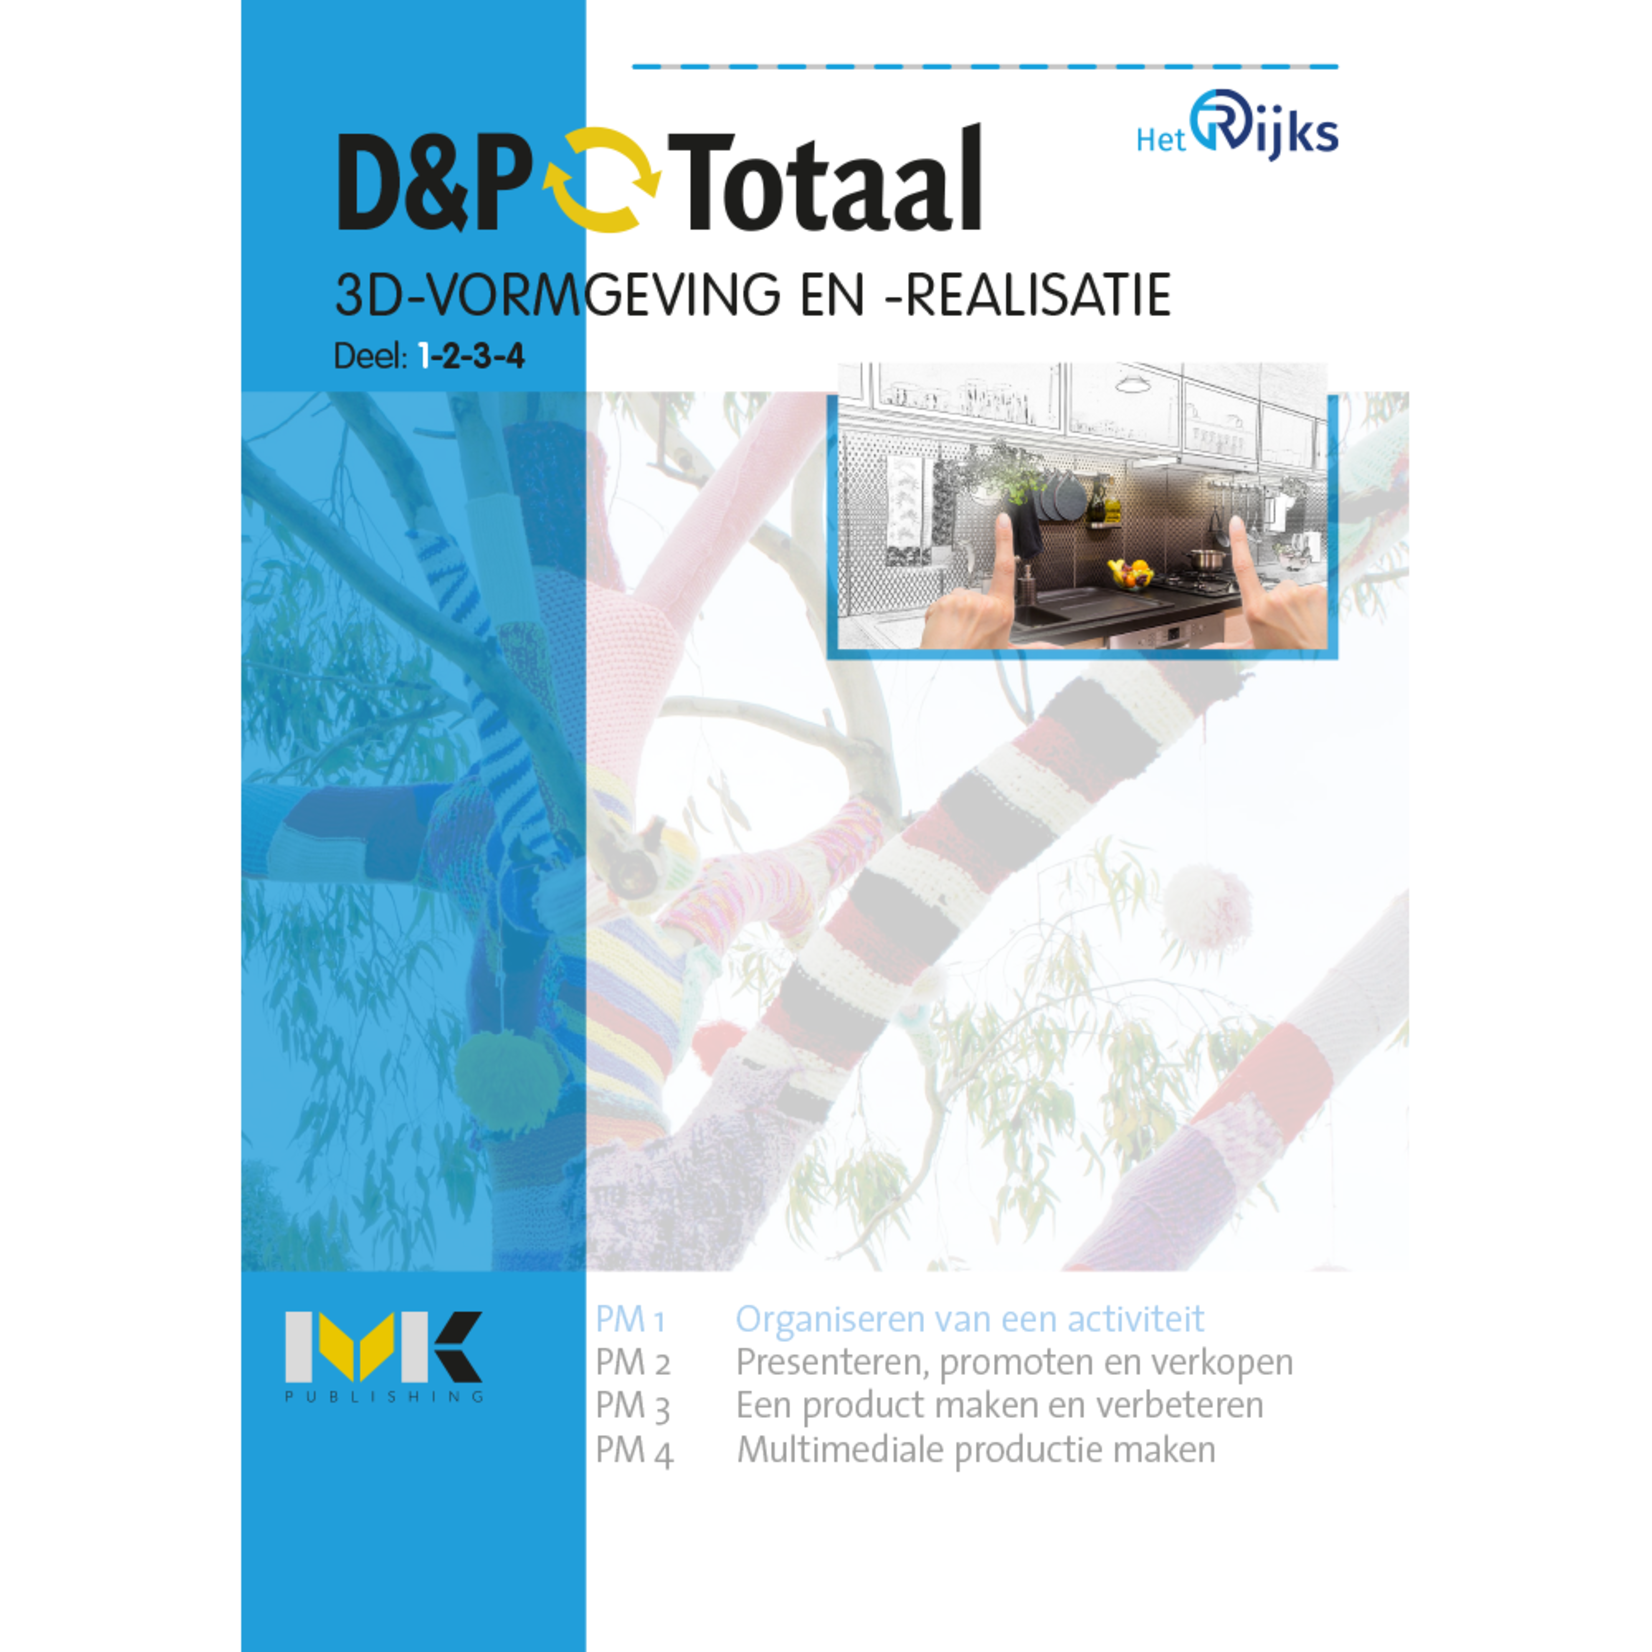 D&P-Totaal - MVI 3D-vormgeving en -realisatie (PM1/1505)